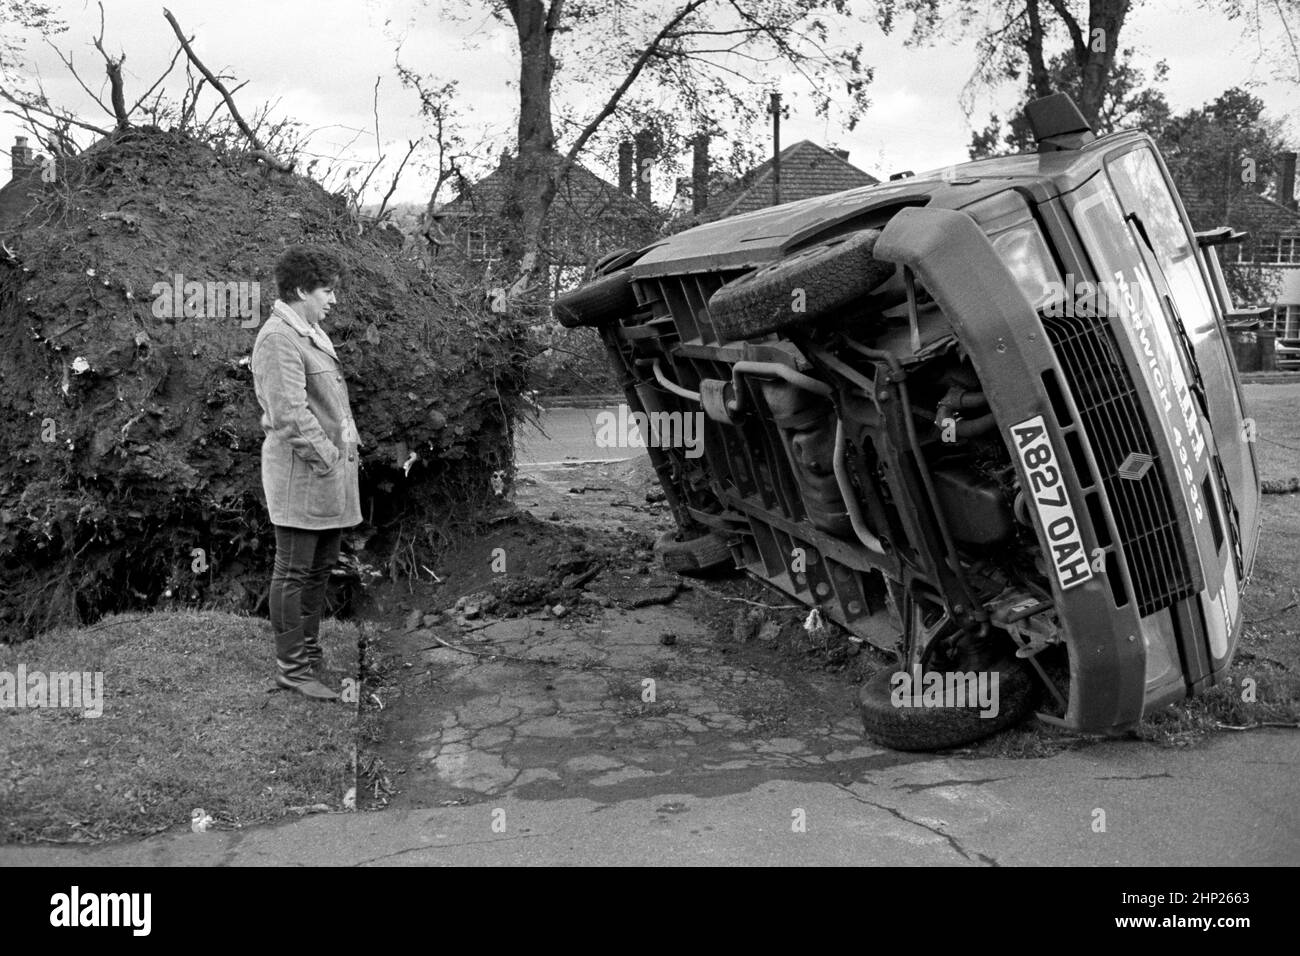 Foto de archivo fechada el 16/10/1987 de un transeúnte mirando un camión que estaba estacionado en Mote Road, Maidstone, hasta que fue volado por un árbol cuando fue desarraigado después de la Gran Tormenta de 1987. Fecha de emisión: Viernes 18 de febrero de 2022. Foto de stock